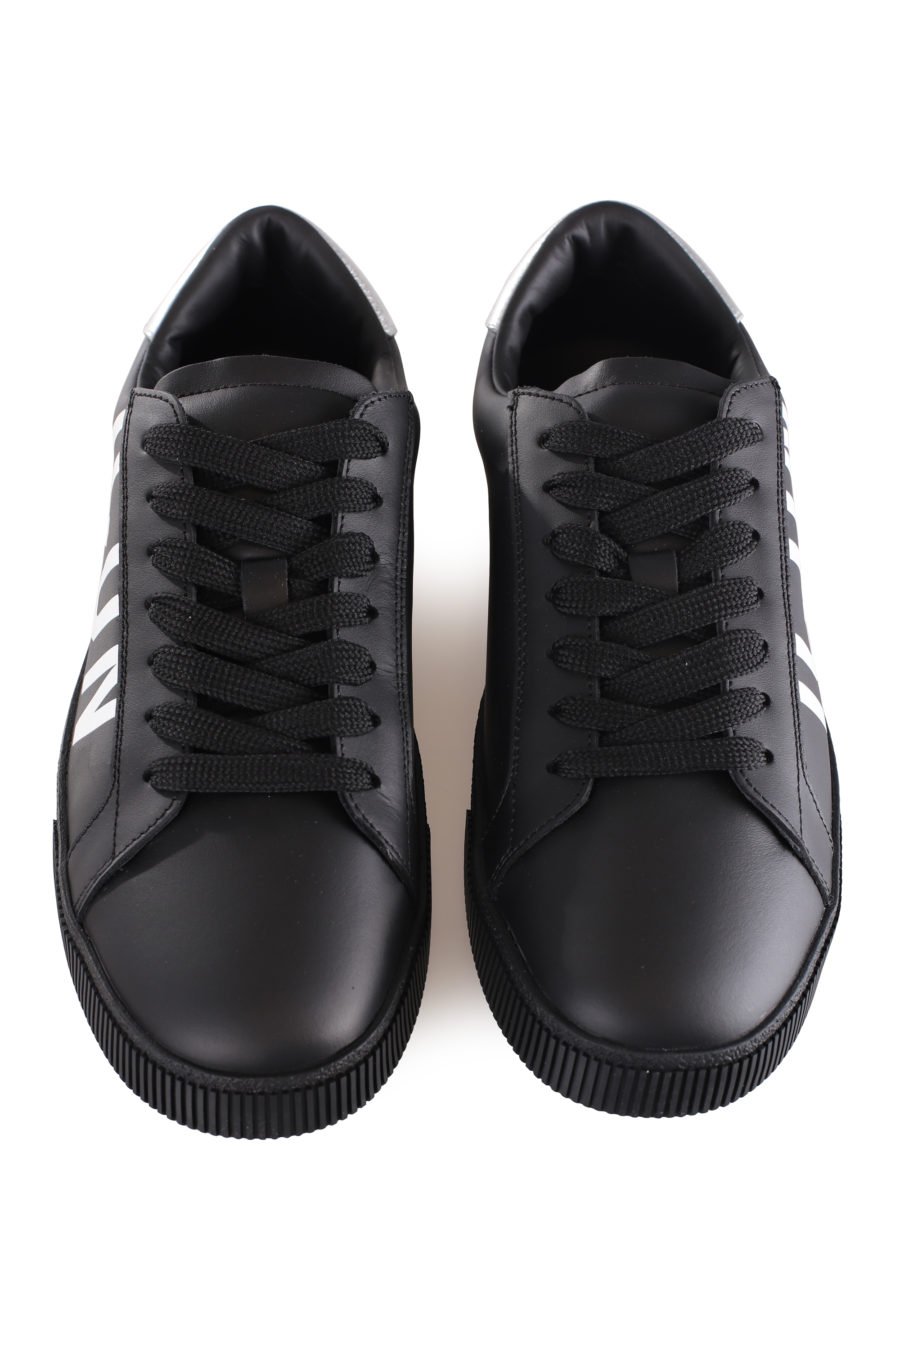 Zapatillas negras con logo "icon" diagonal y detalle plateado - IMG 9598